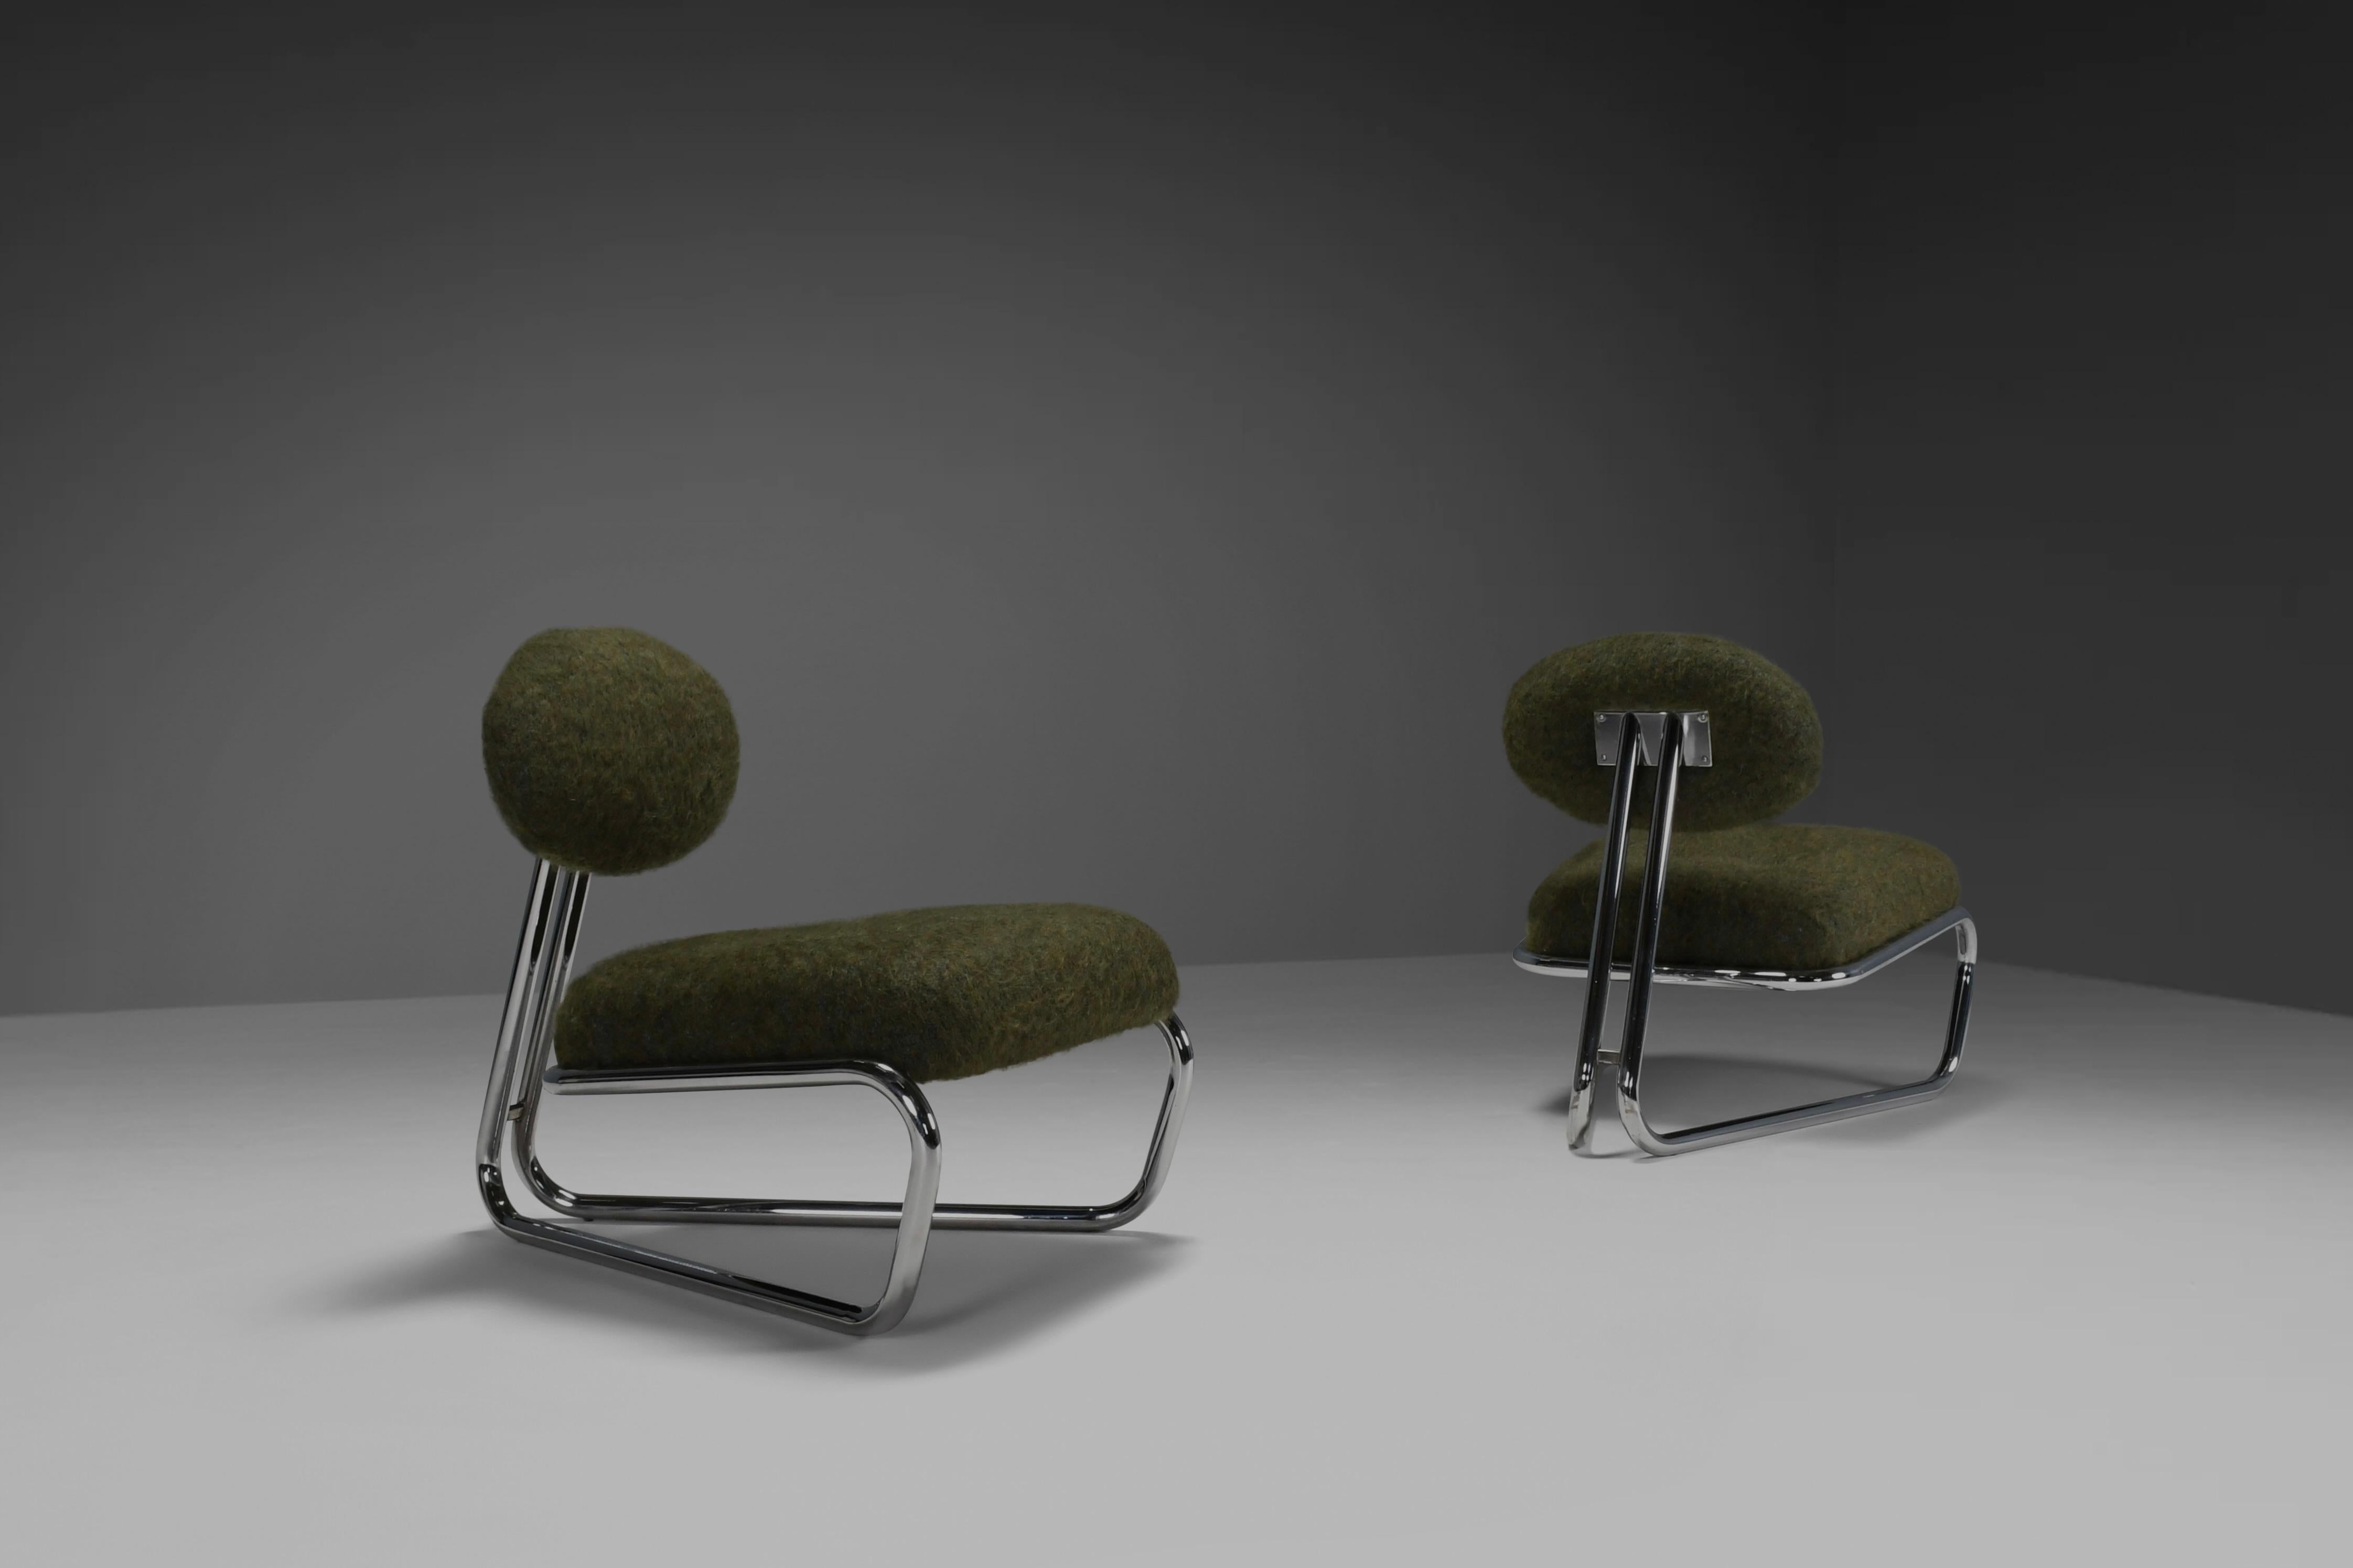 Schöne modernistische Lounge-Stühle in sehr gutem Zustand.

Diese Stühle wurden in den 1970er Jahren in Italien hergestellt.

Die freitragenden Gestelle sind aus verchromtem Stahl gefertigt und haben eine glänzende Oberfläche. 
Sie haben eine schöne